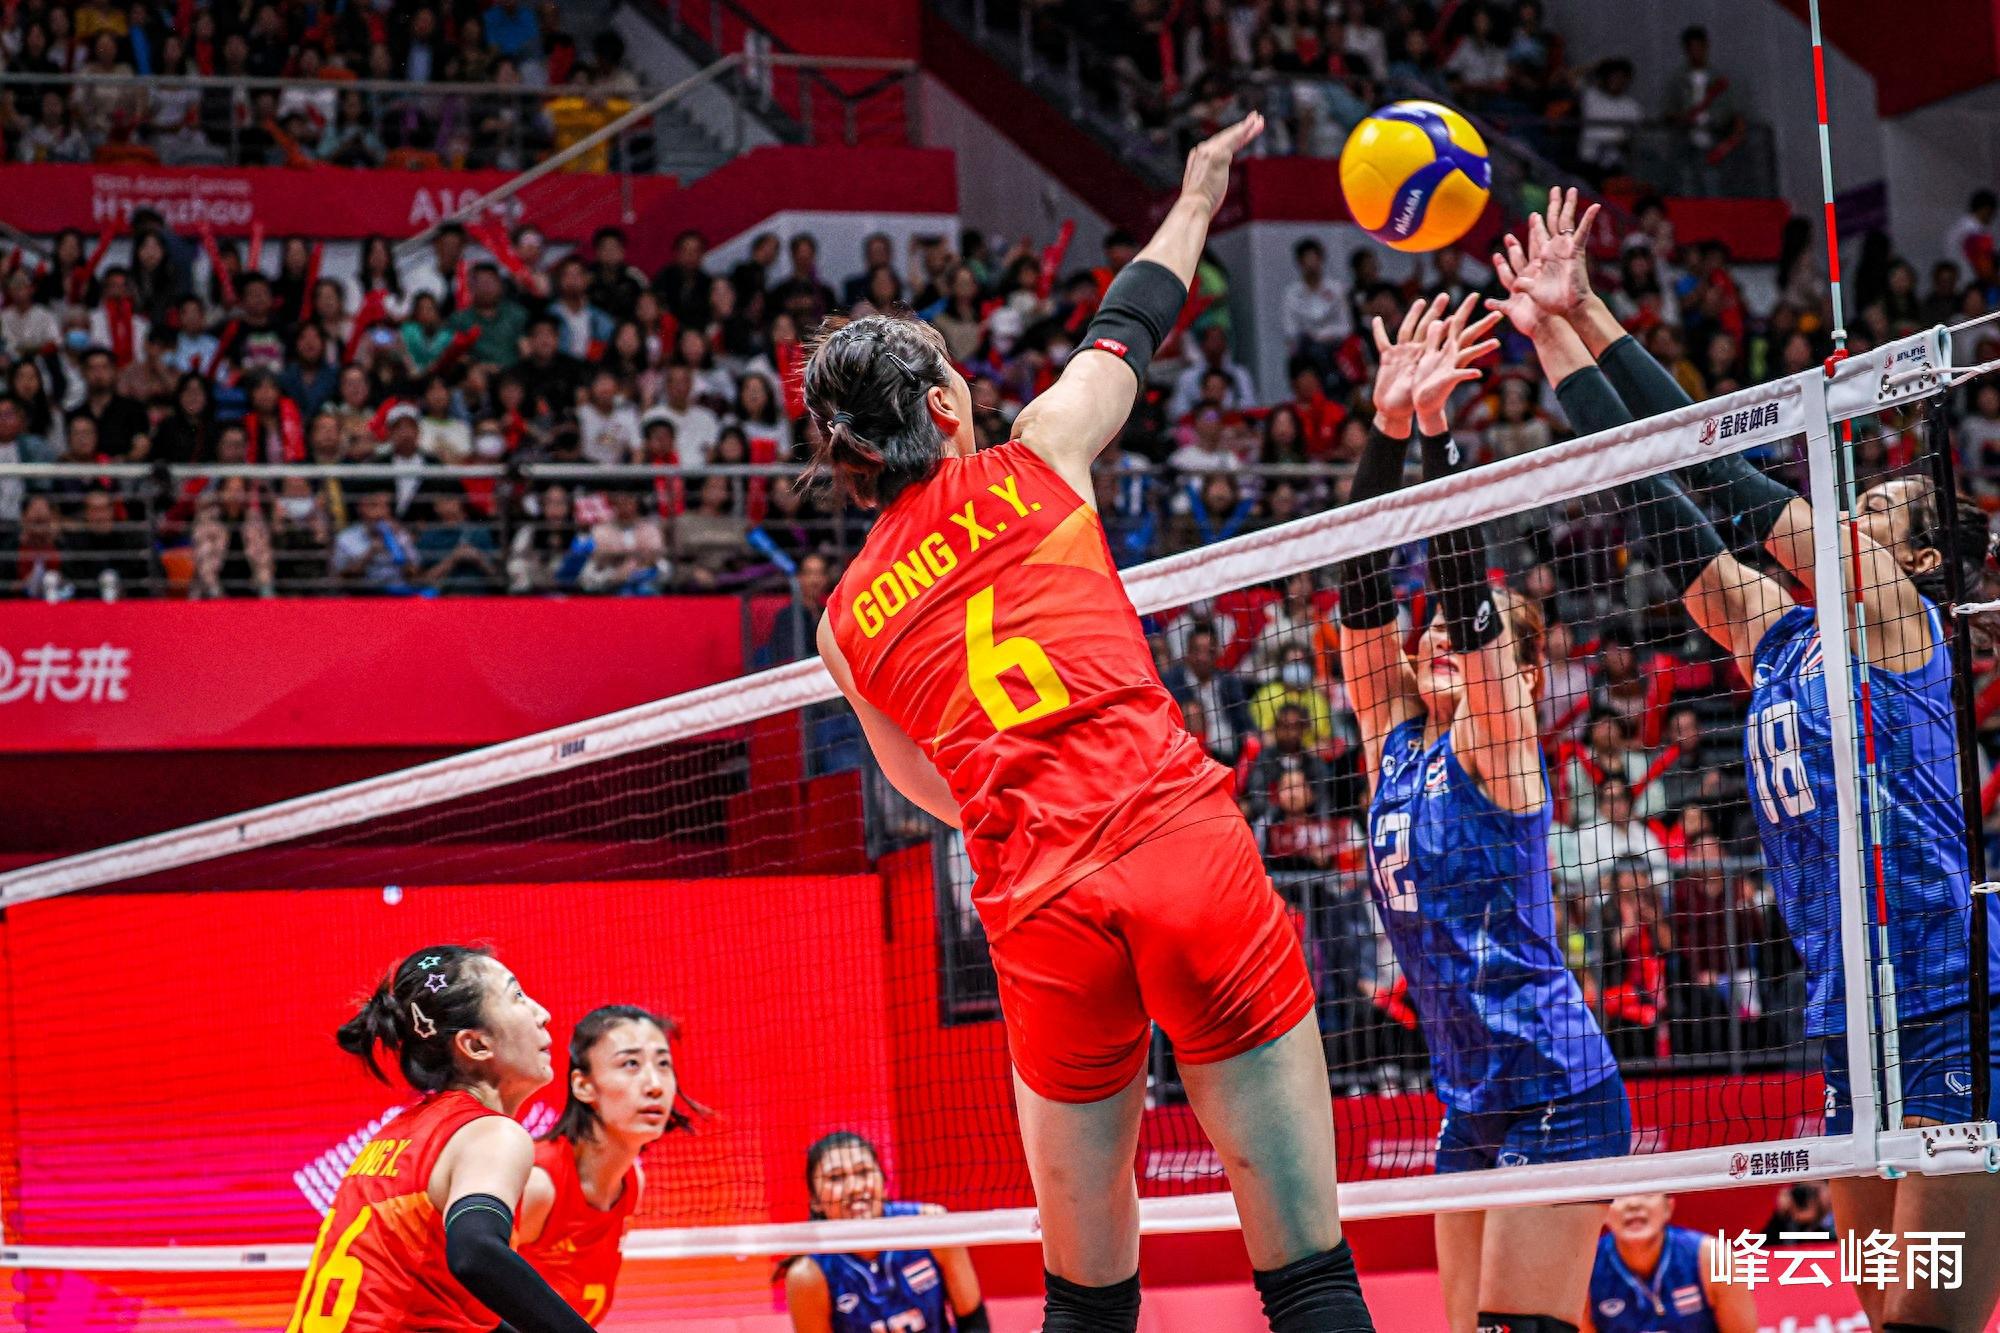 中国女排走出奥运资格赛失利的阴影，斩获队史第9个亚运会冠军(1)